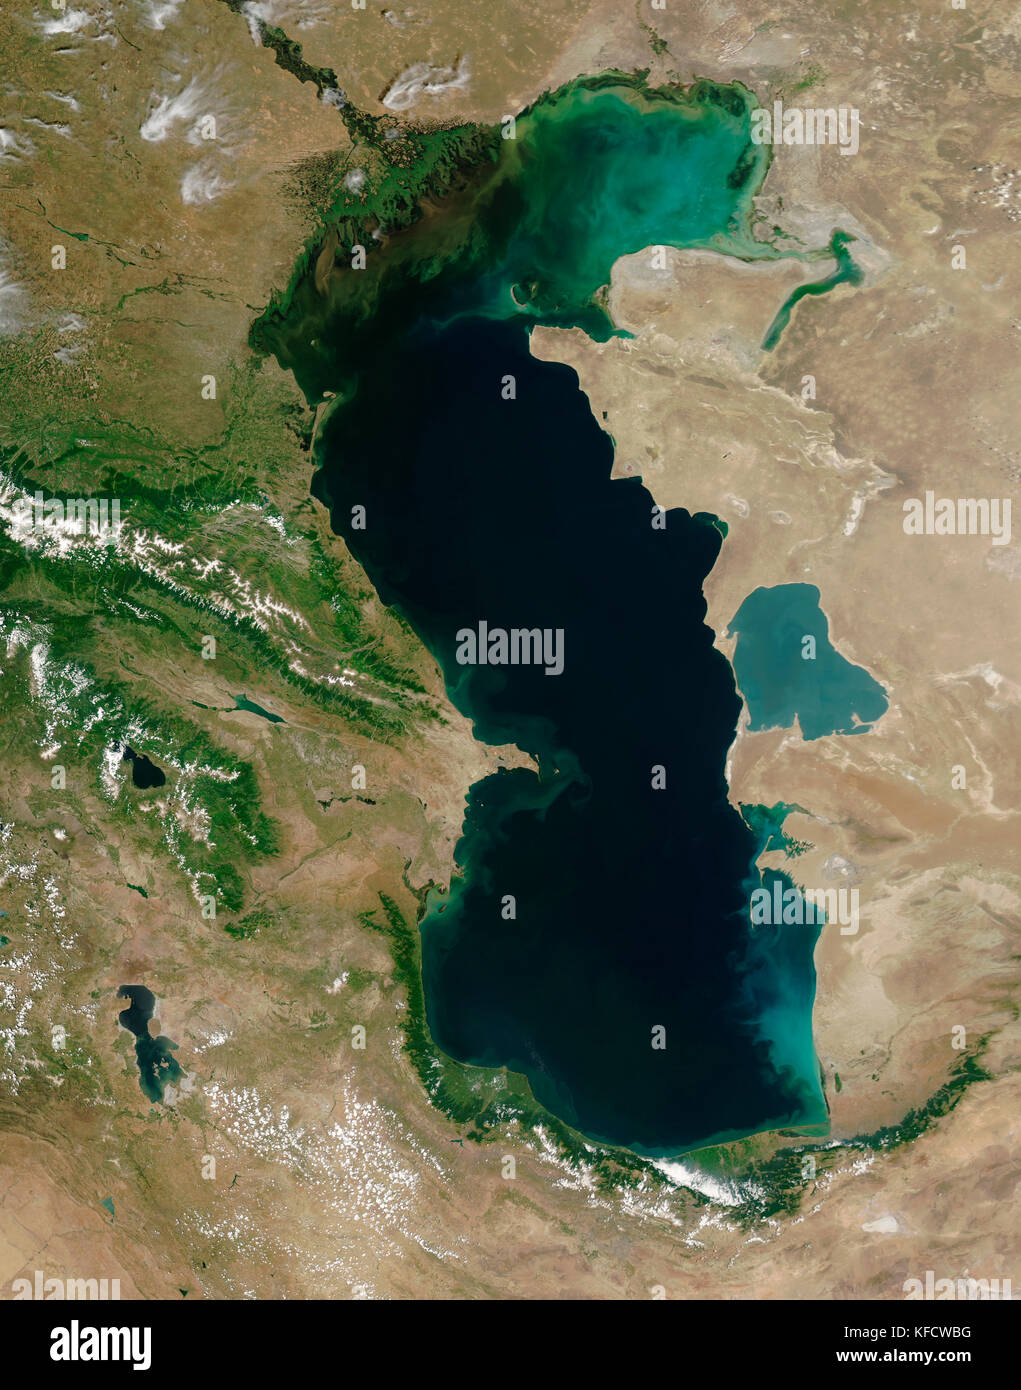 El río Volga ventiladores en un amplio delta en la orilla noroeste del Mar Caspio. Más de 500 canales fluya desde el río hacia el mar. Foto de stock